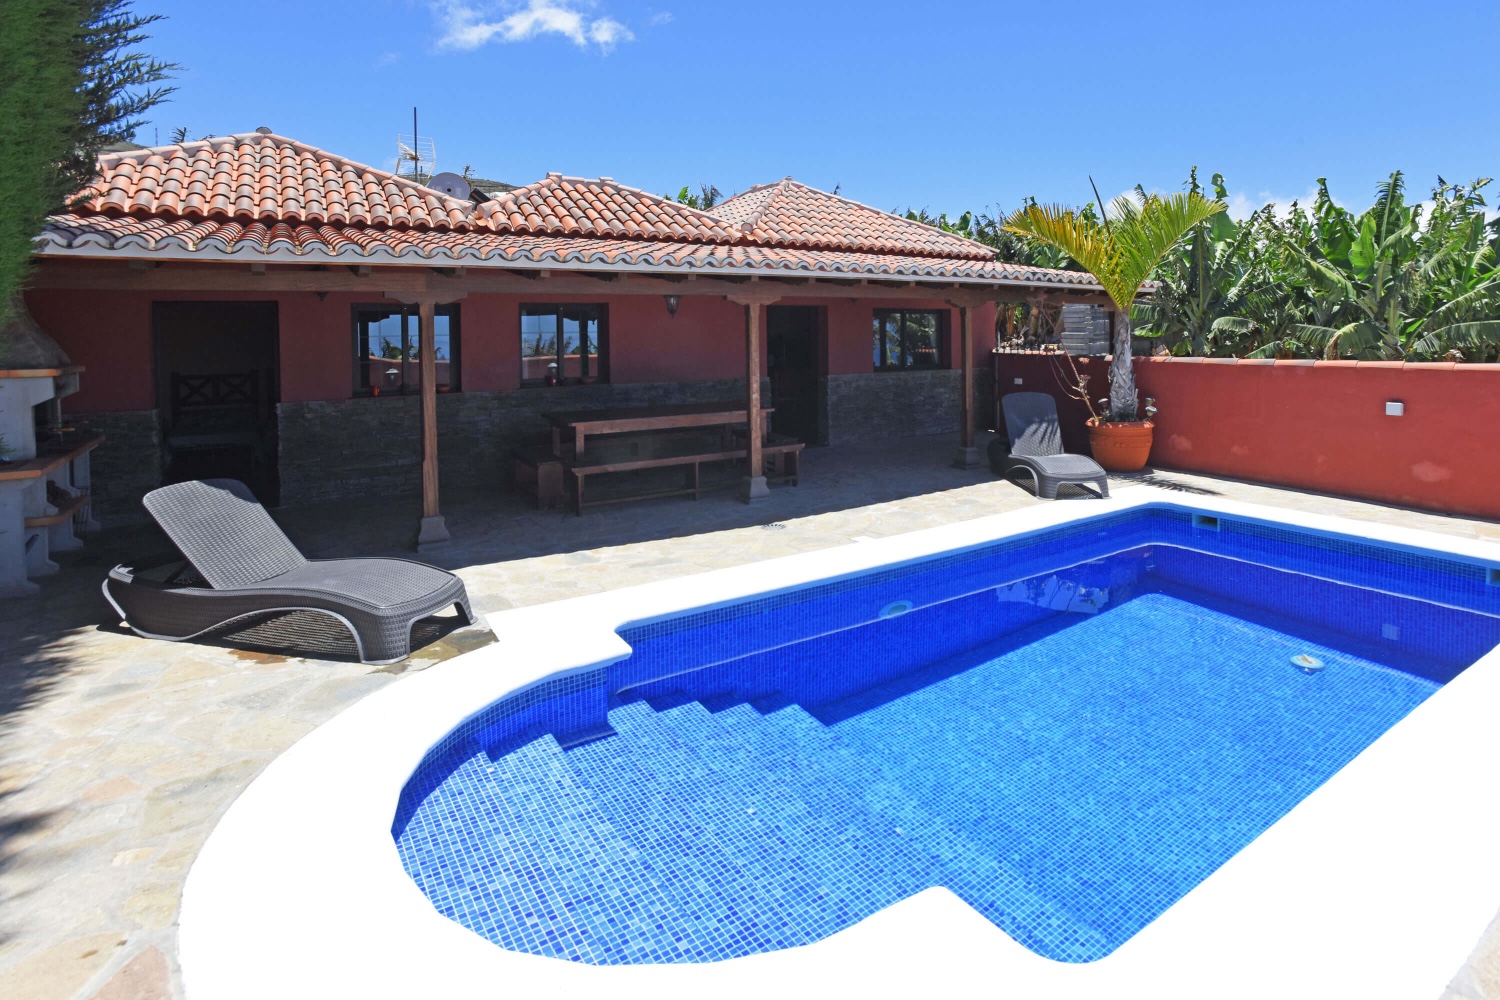 Bella casa rurale per 4 persone con piscina privata con facile accesso situata in una zona rurale con vista sul mare e sulle montagne